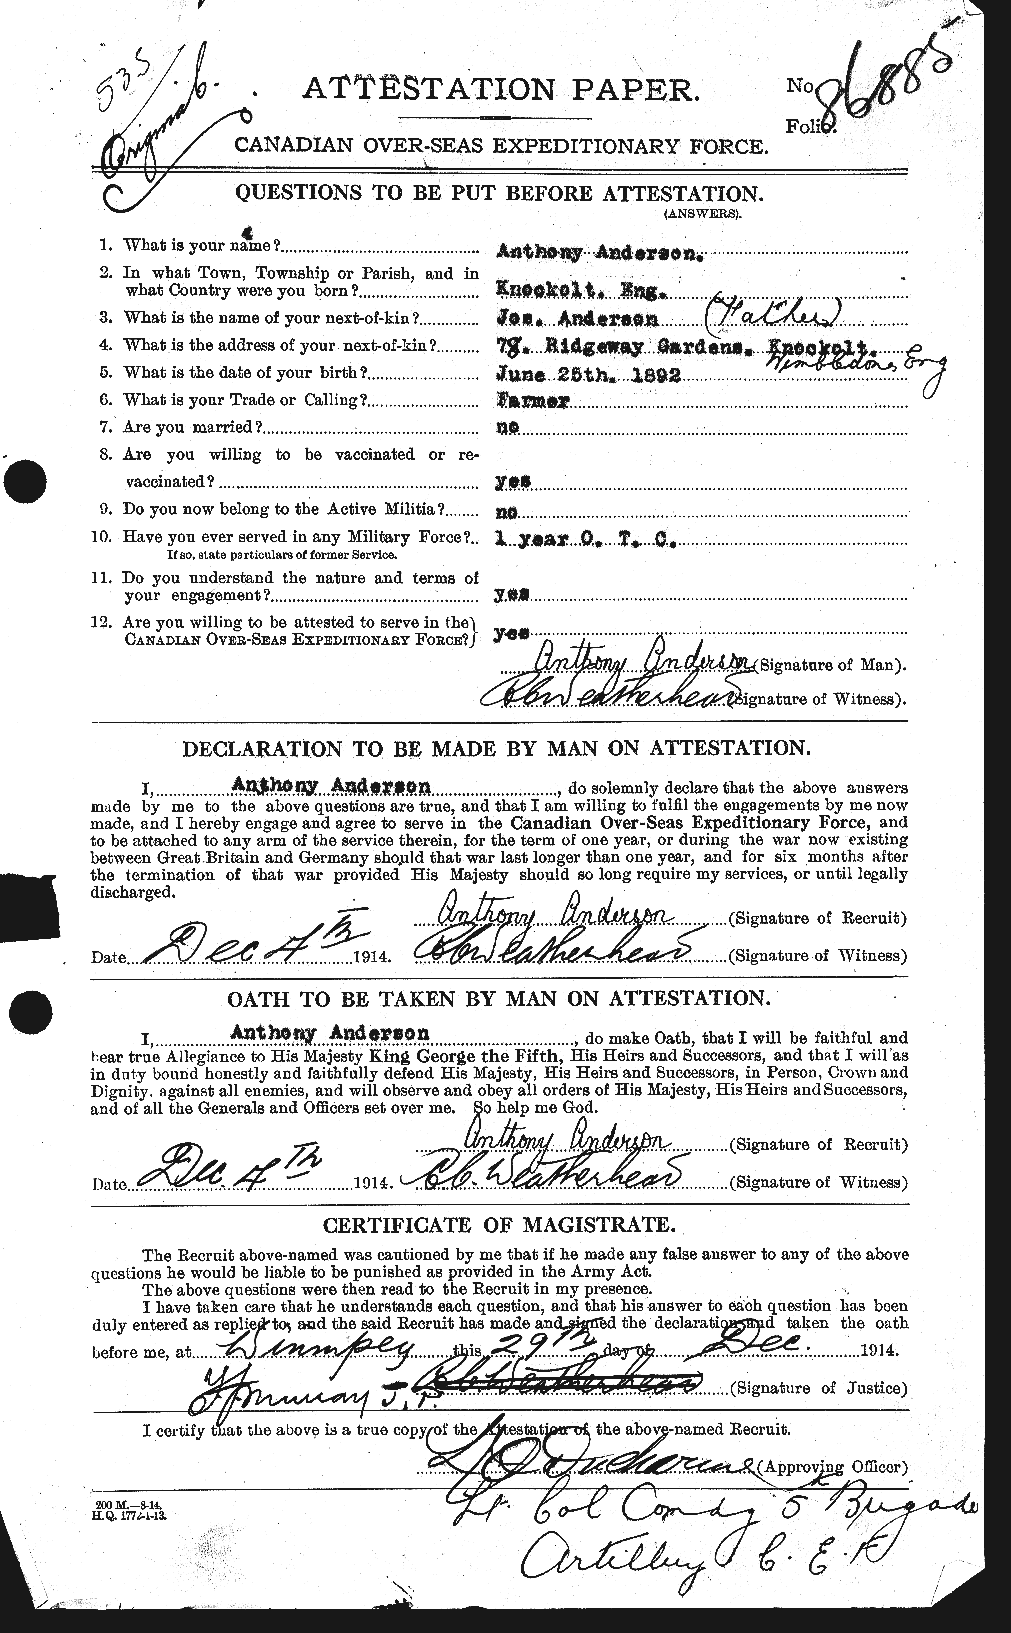 Dossiers du Personnel de la Première Guerre mondiale - CEC 209384a